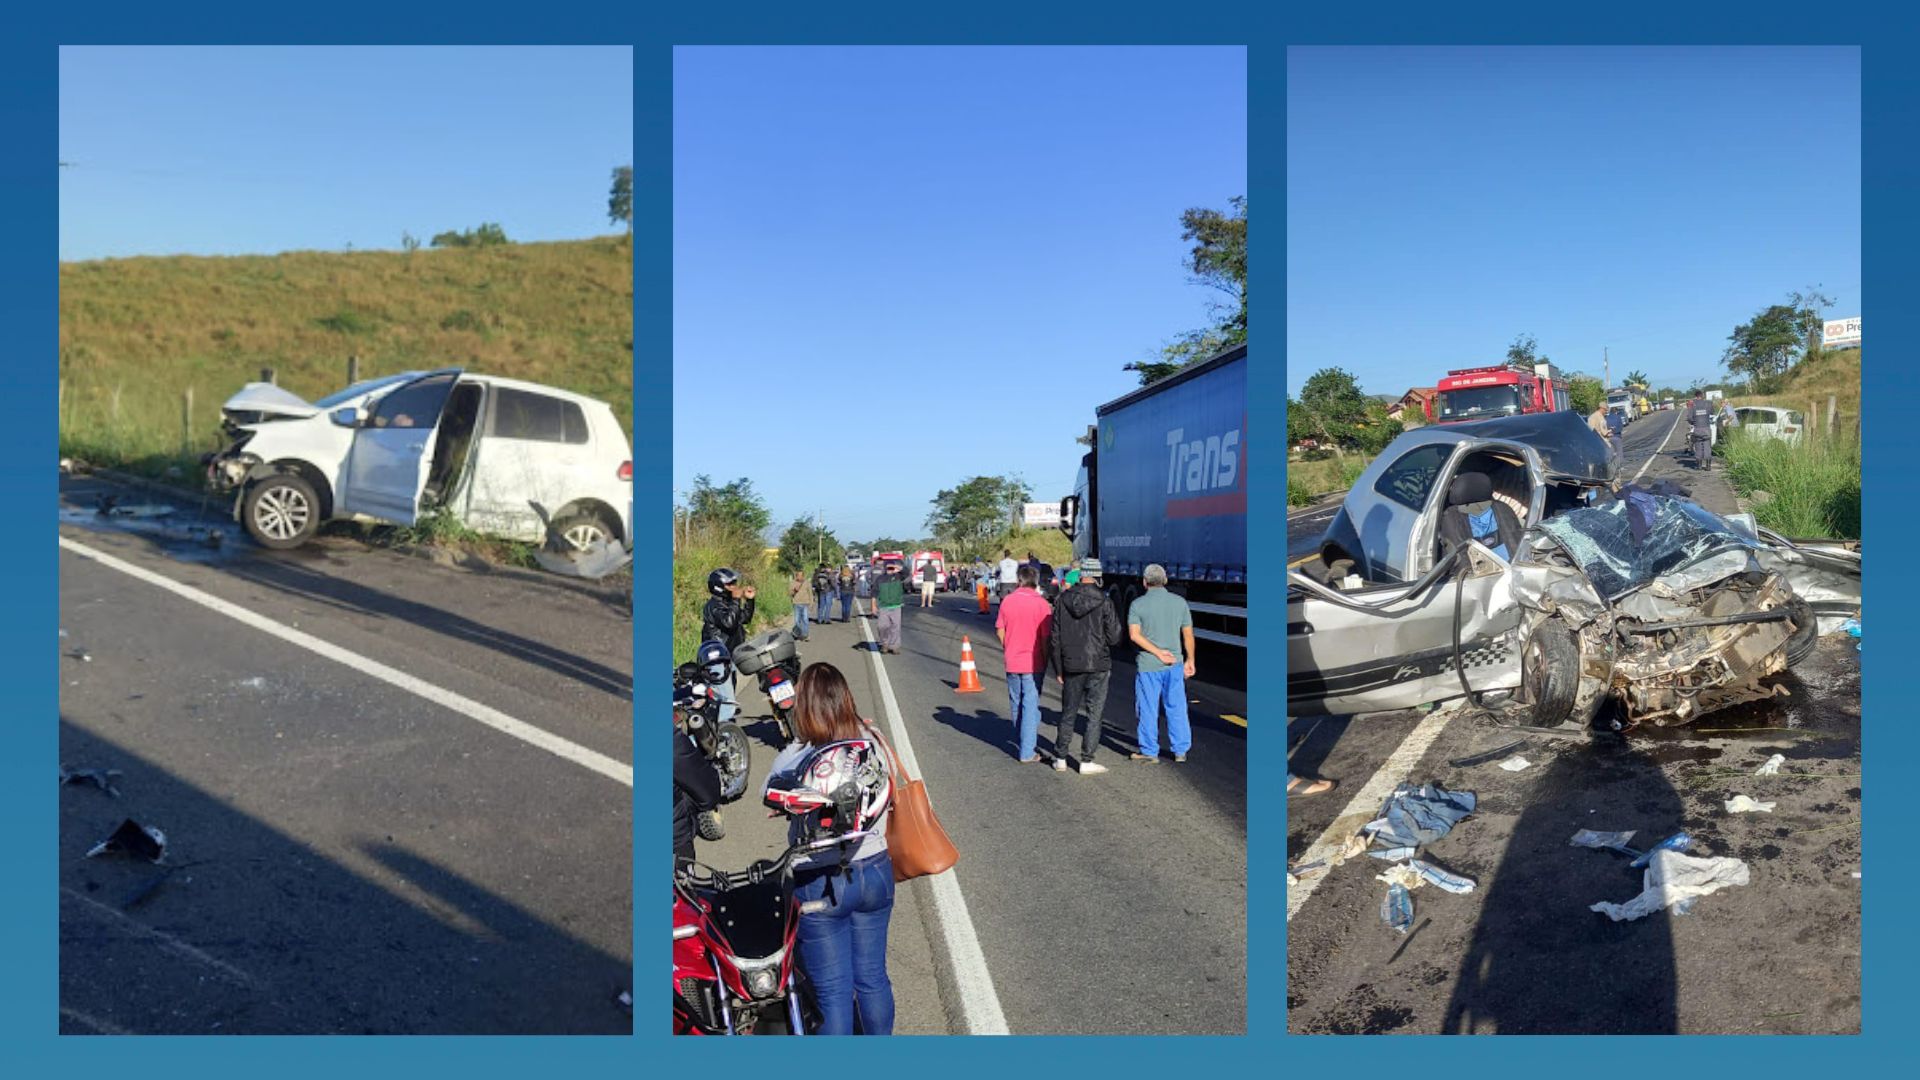 A colisão envolveu três veículos na manhã deste sábado (20) na ES 297, na localidade de José Carlos, em Apiacá, Sul do Estado